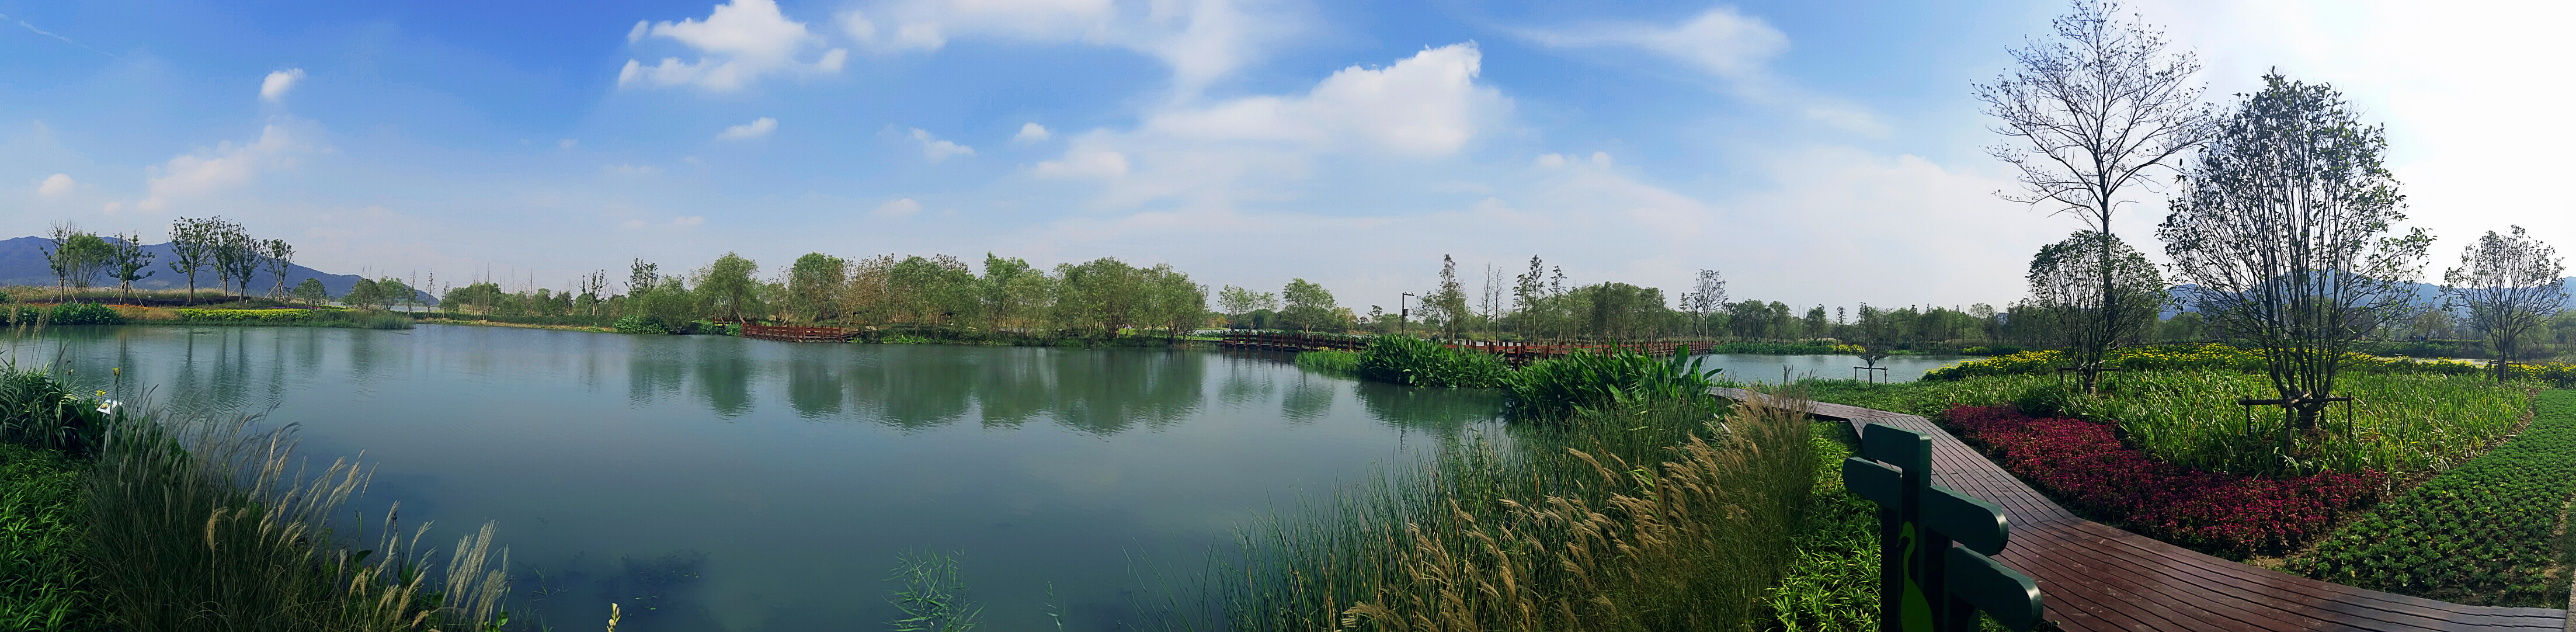 長興太湖圖影生態濕地文化園